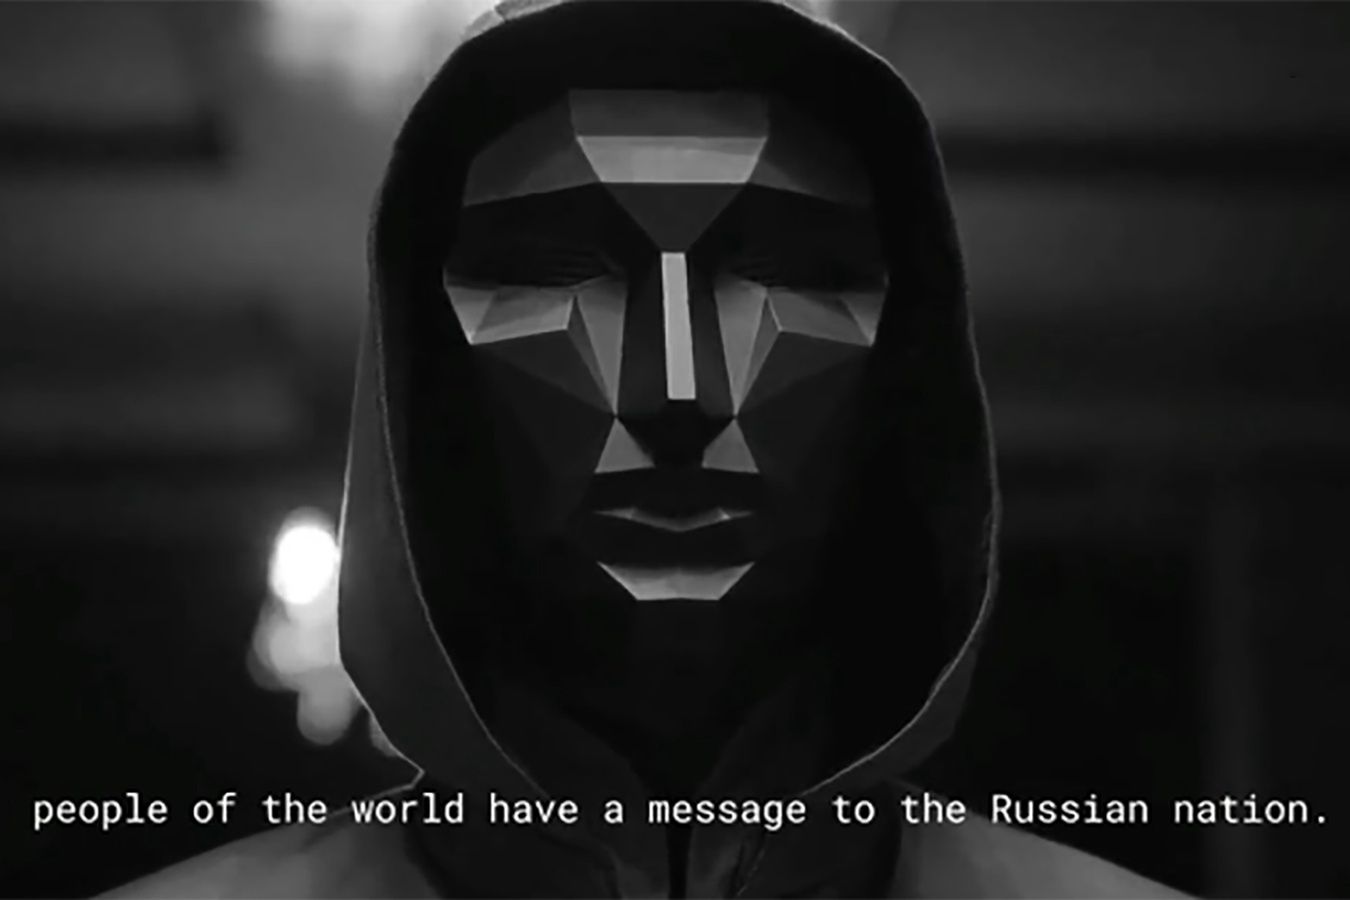 Hakerzy opublikowali niepokojący film. Komunikat skierowany do Putina